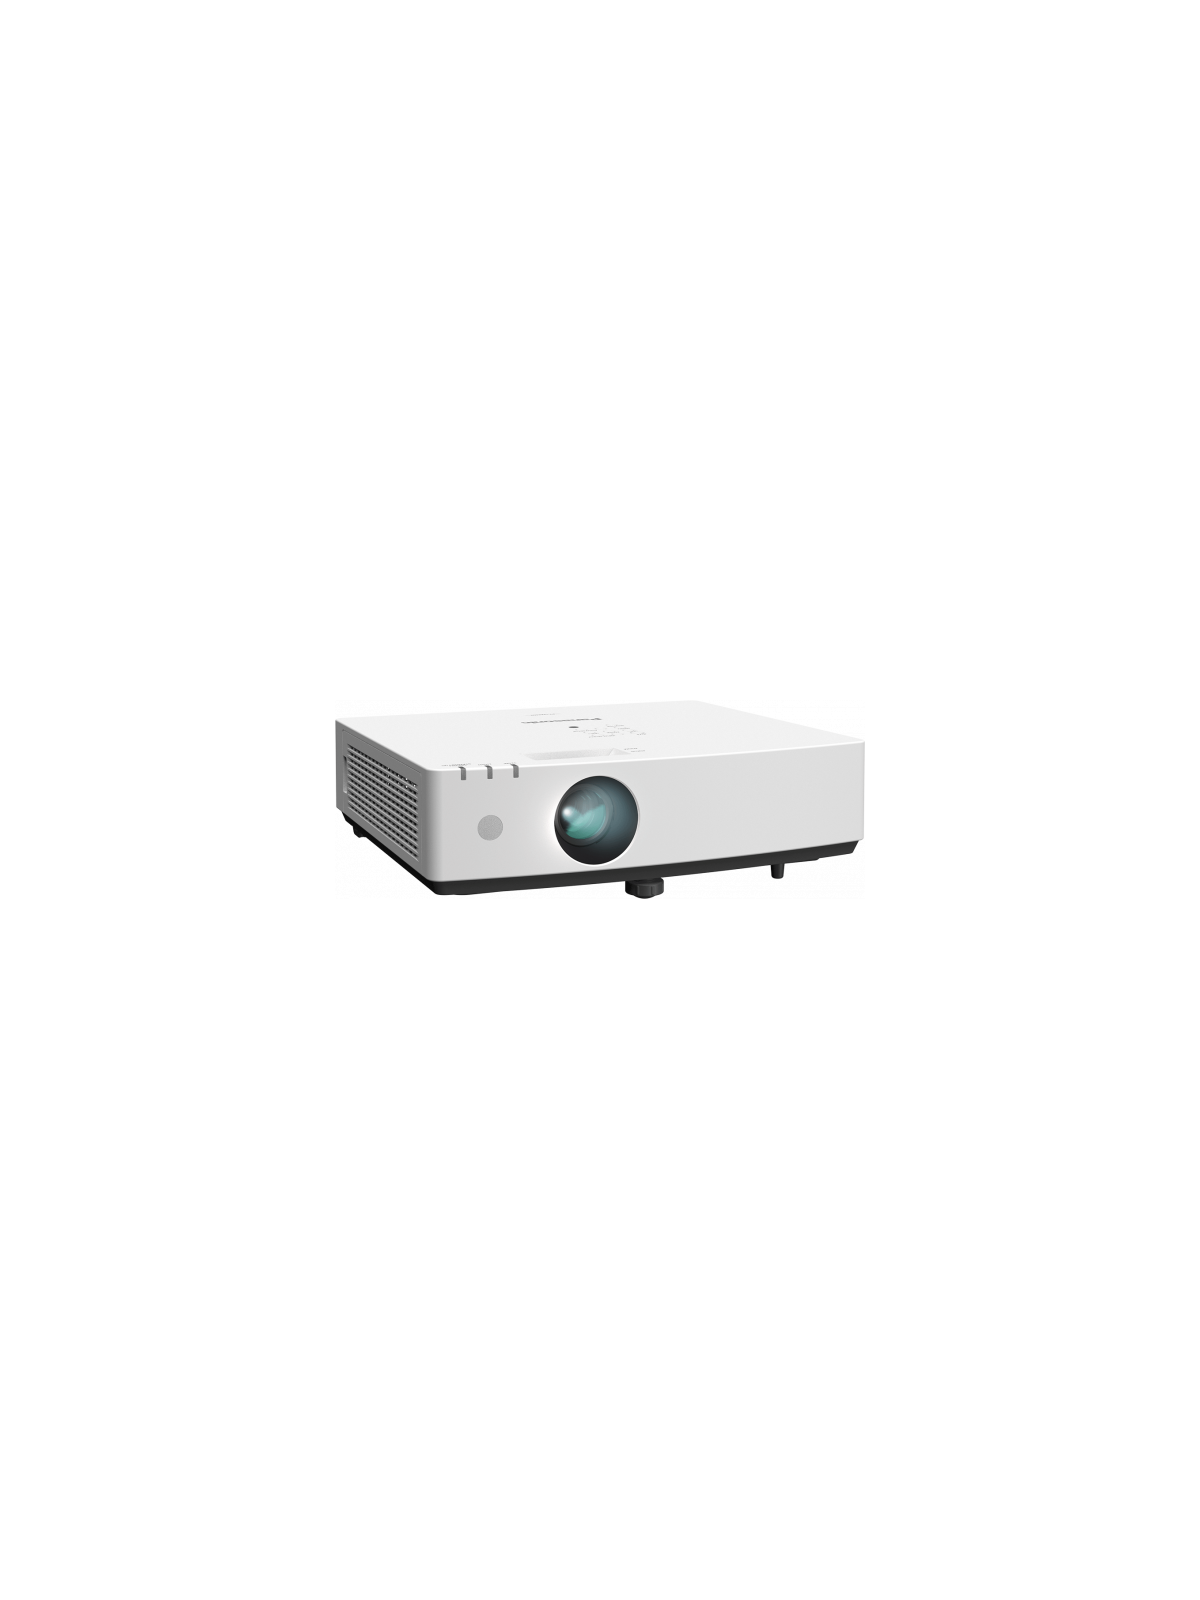 Vidéoprojecteur Led/Laser Panasonic - PT-LMZ460
Laser - WUXGA (1920x1200) 4 600lm